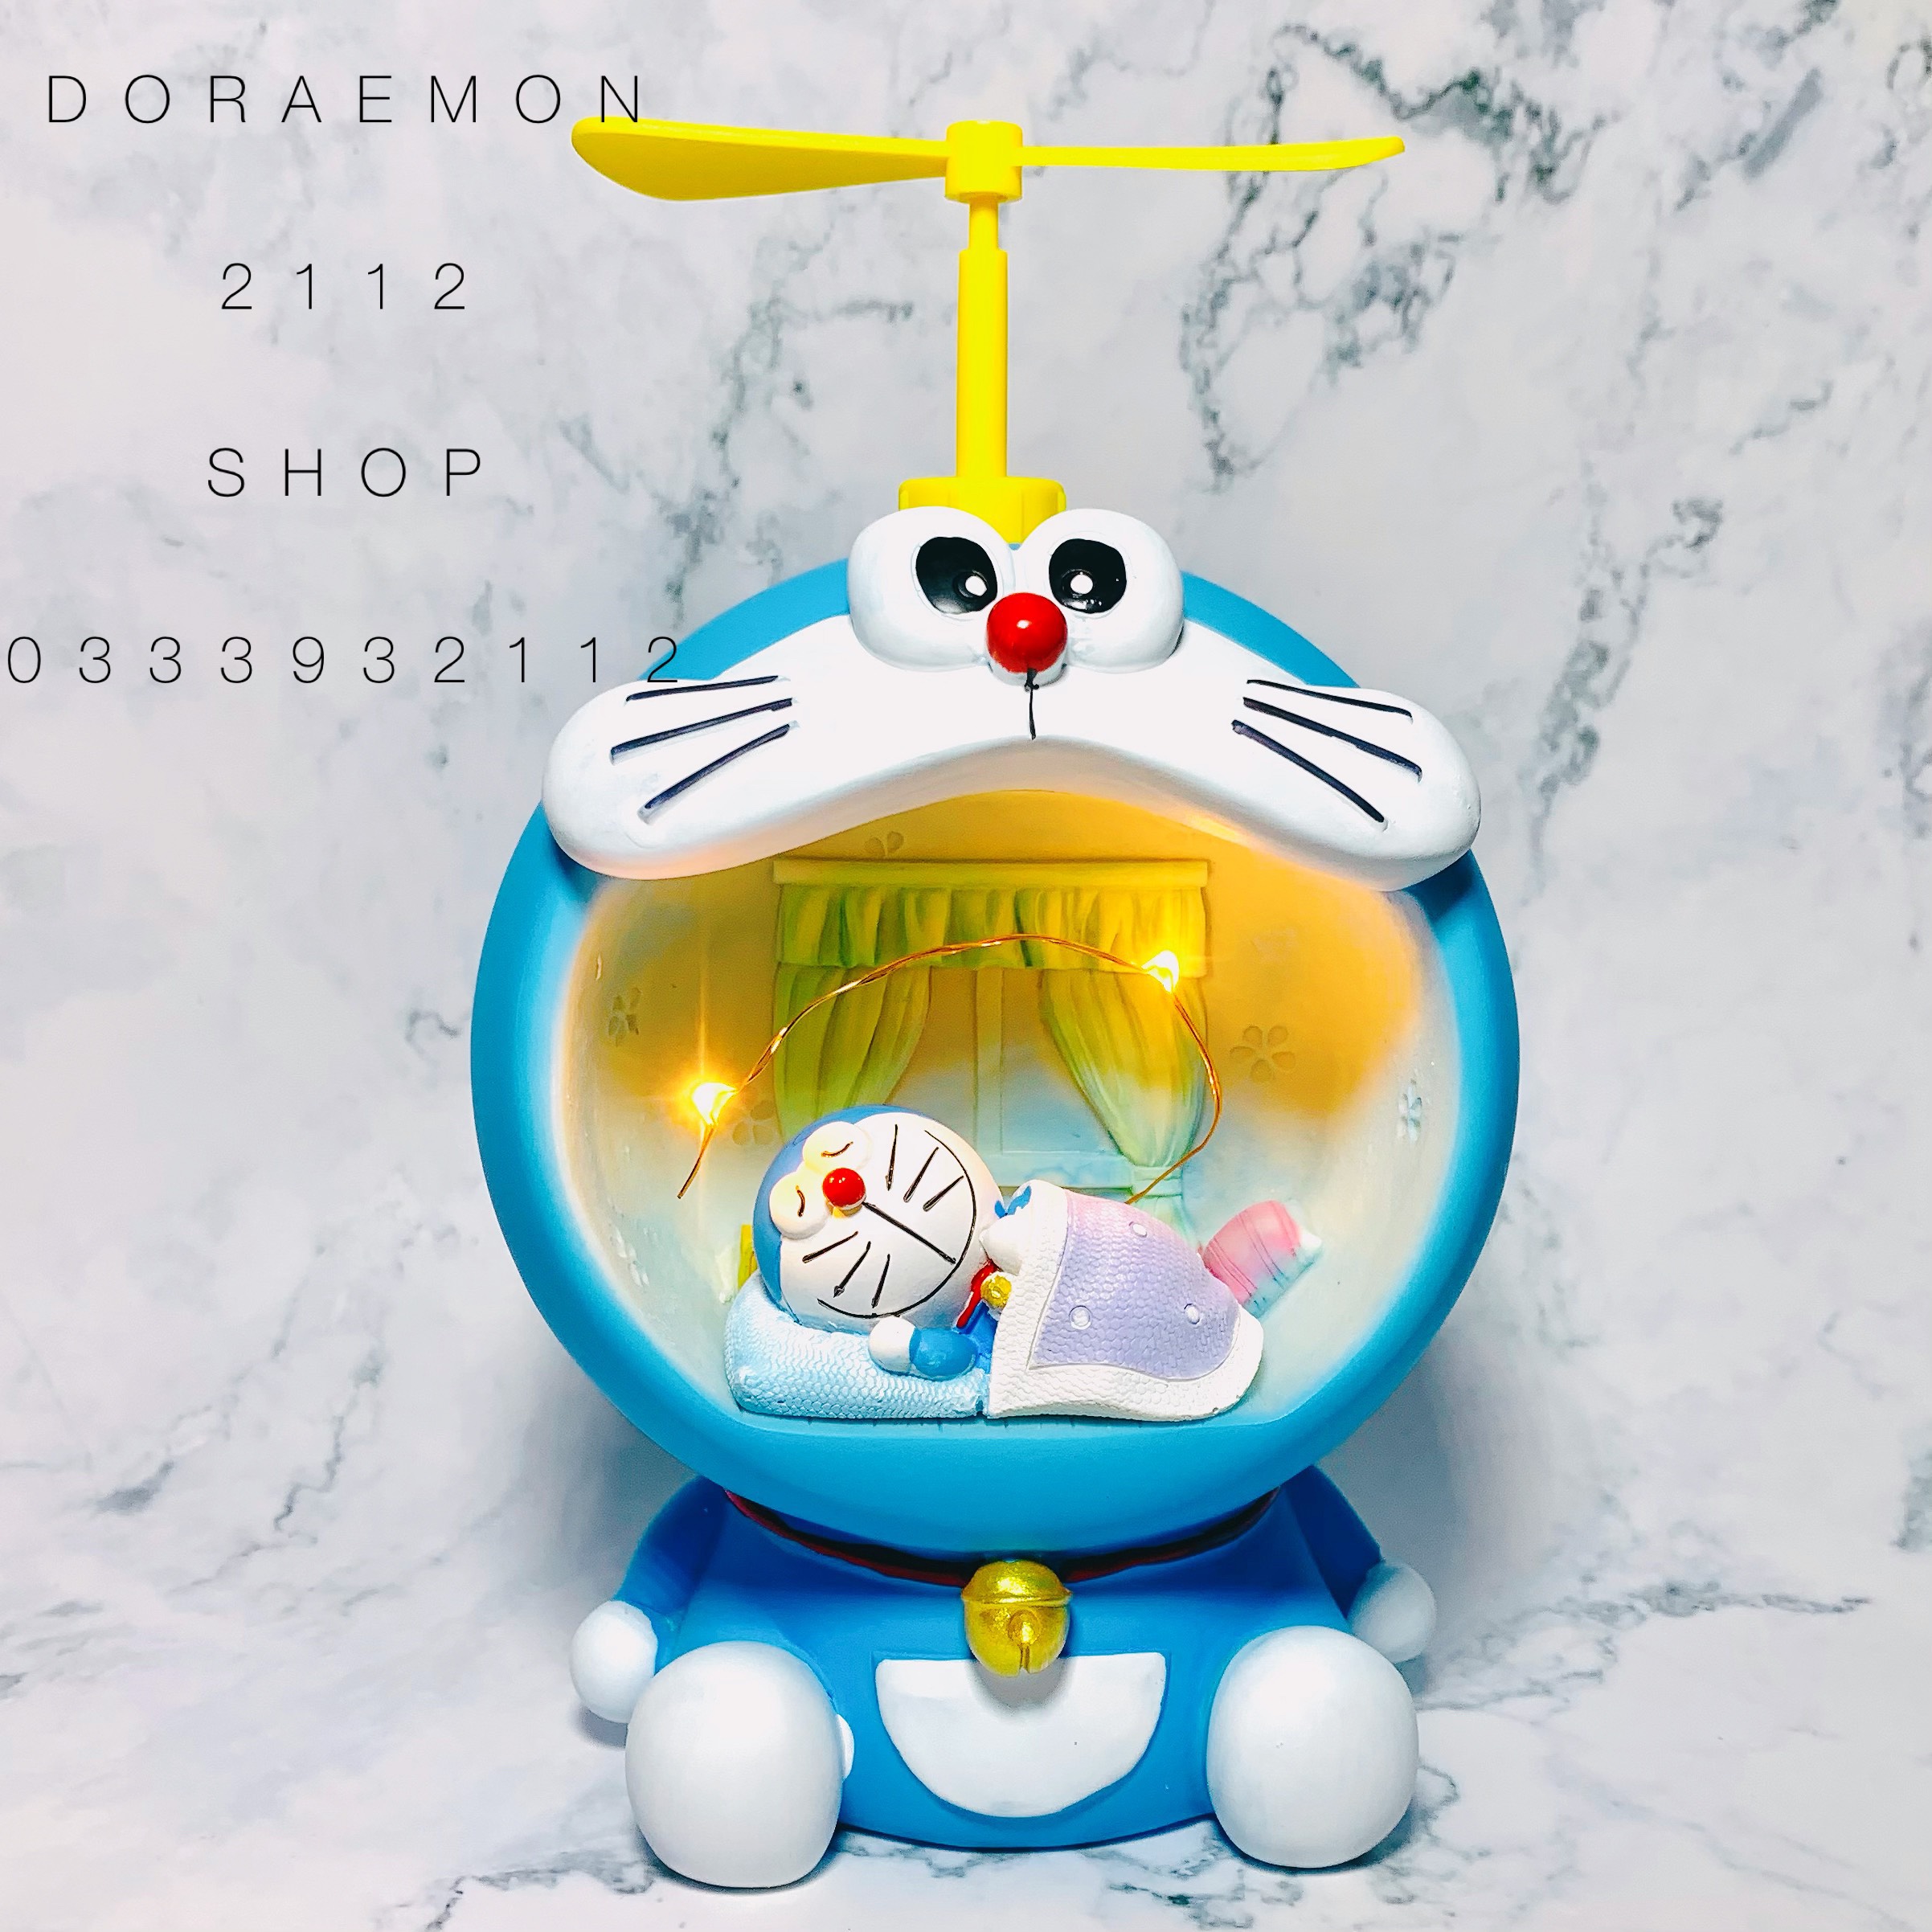 Bạn đang tìm kiếm món đồ trang trí cho phòng ngủ của mình? Hãy xem ngay chiếc đèn ngủ Doraemon này nhé! Với thiết kế độc đáo và hoạt hình đáng yêu, chiếc đèn này không chỉ là một món đồ trang trí mà còn giúp bạn có giấc ngủ ngon và dễ chịu hơn đấy.